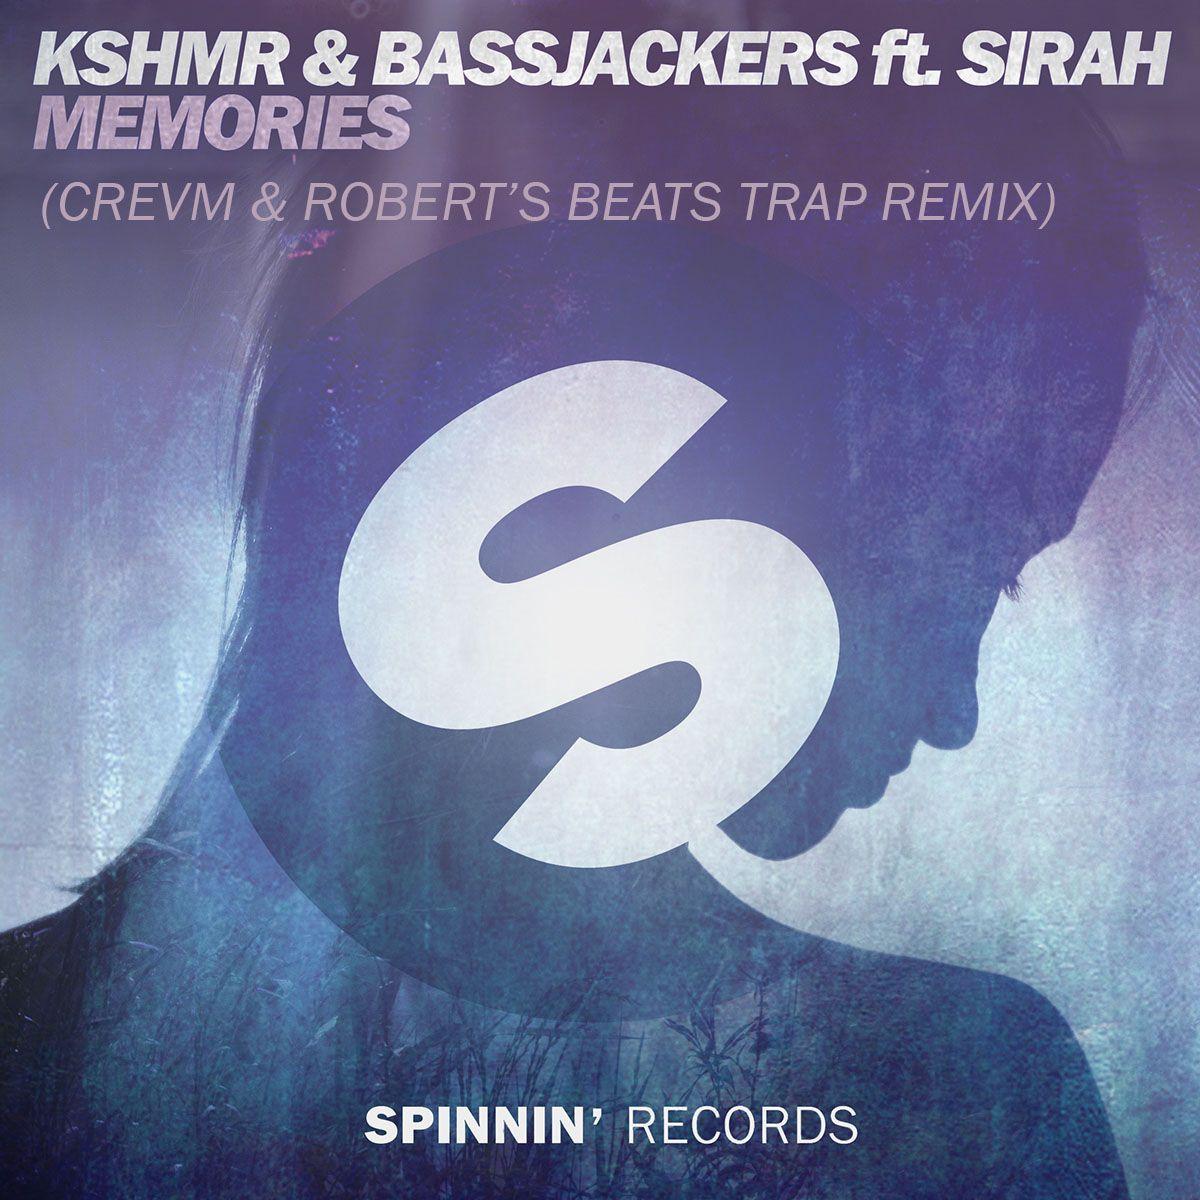 KSHMR & Bassjackers Feat. Sirah CREVM & Robert's Beats